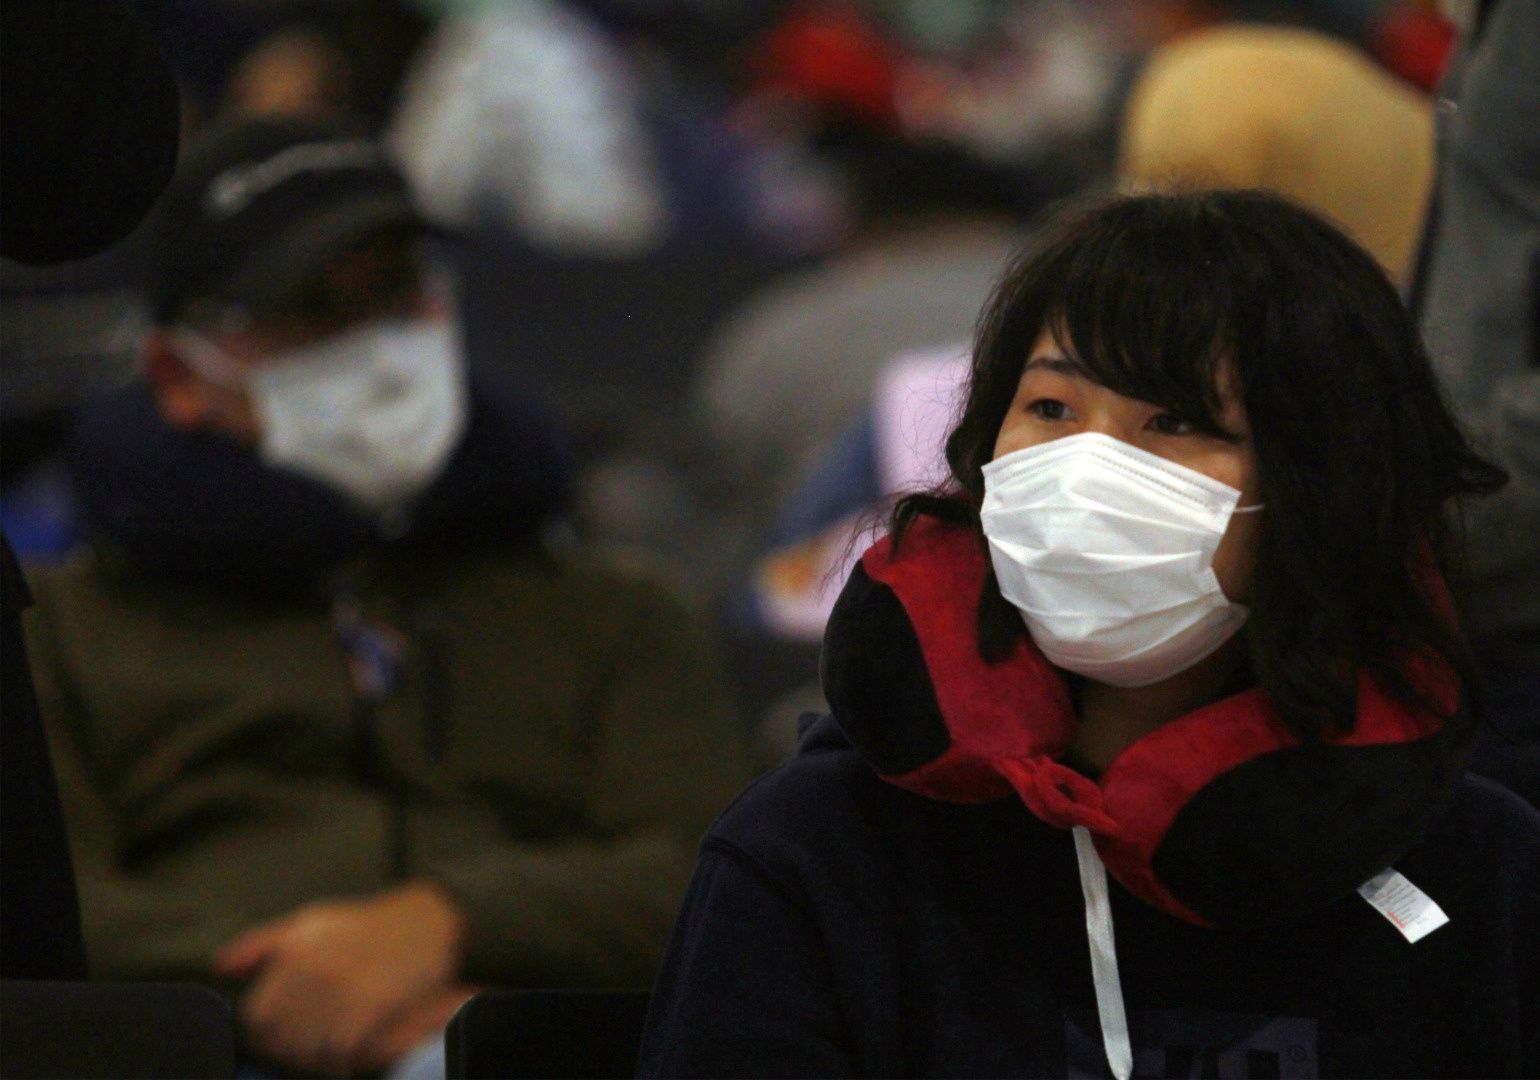 Čínská pasažérka na letišti, koronavirus, Čína - ilustrační foto.